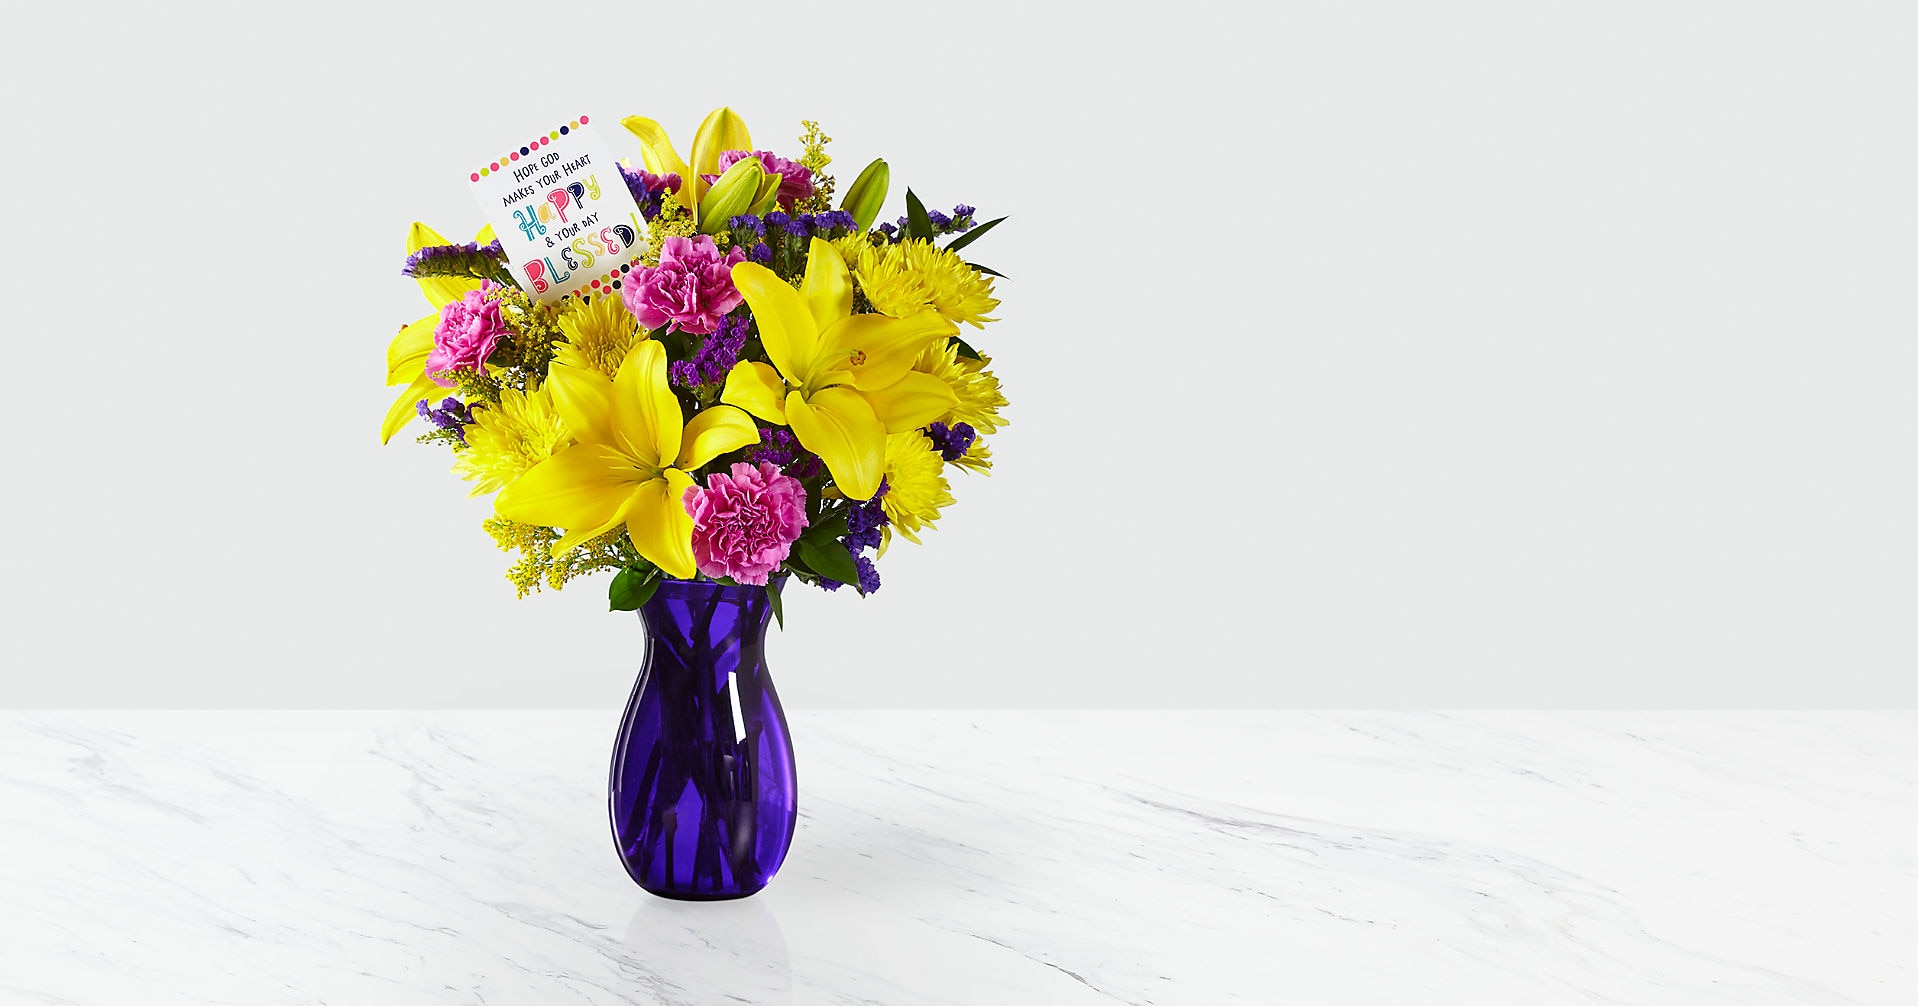 DaySpring Happy Heart Bouquet by Hallmark